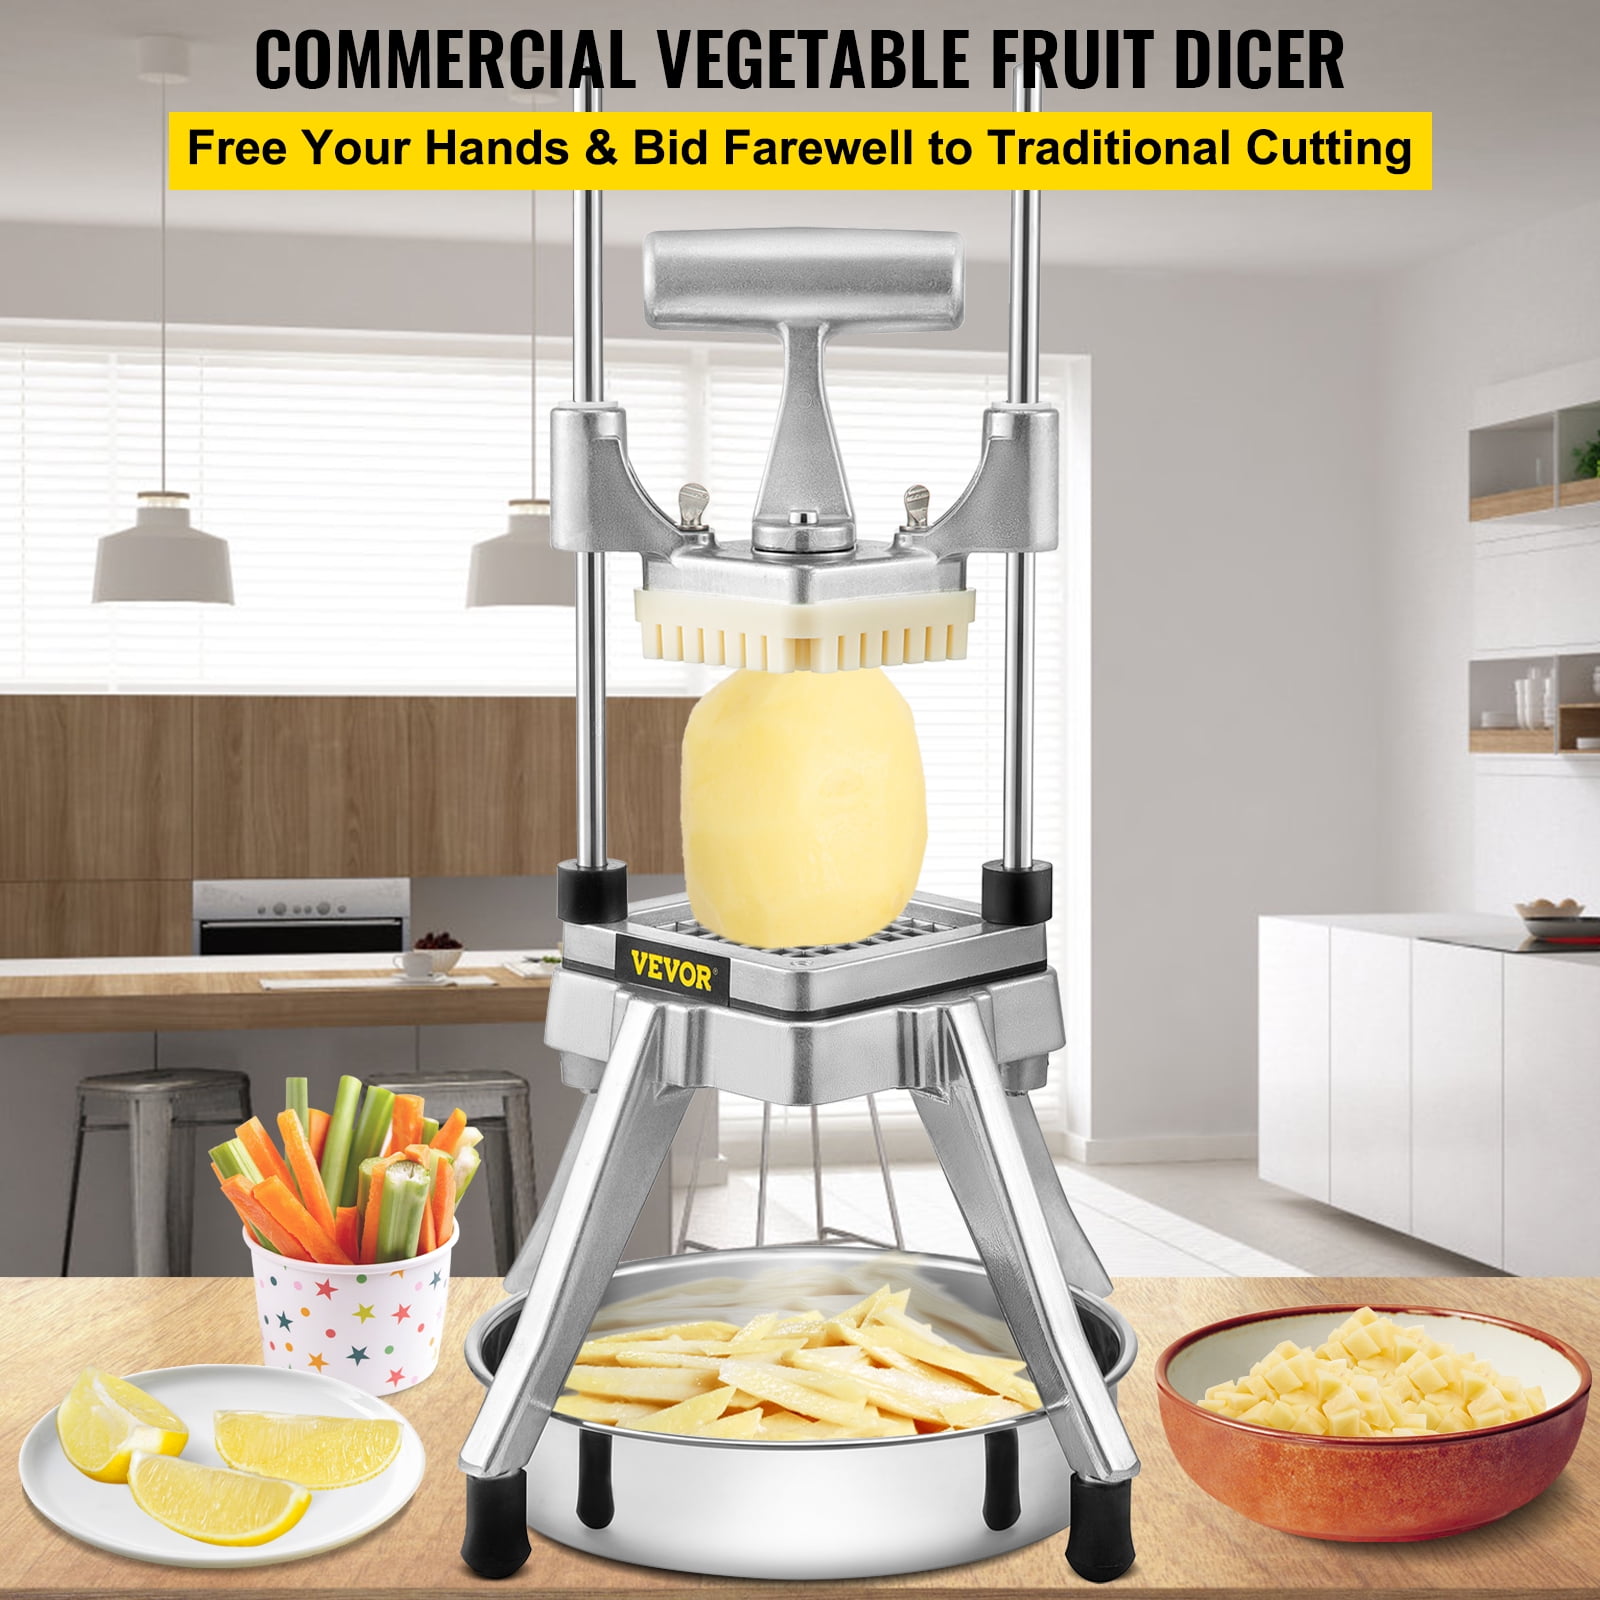 VEVOR Commercial Chopper Commercial Vegetable Dicer 1/4-Inch Commercial Food Chopper